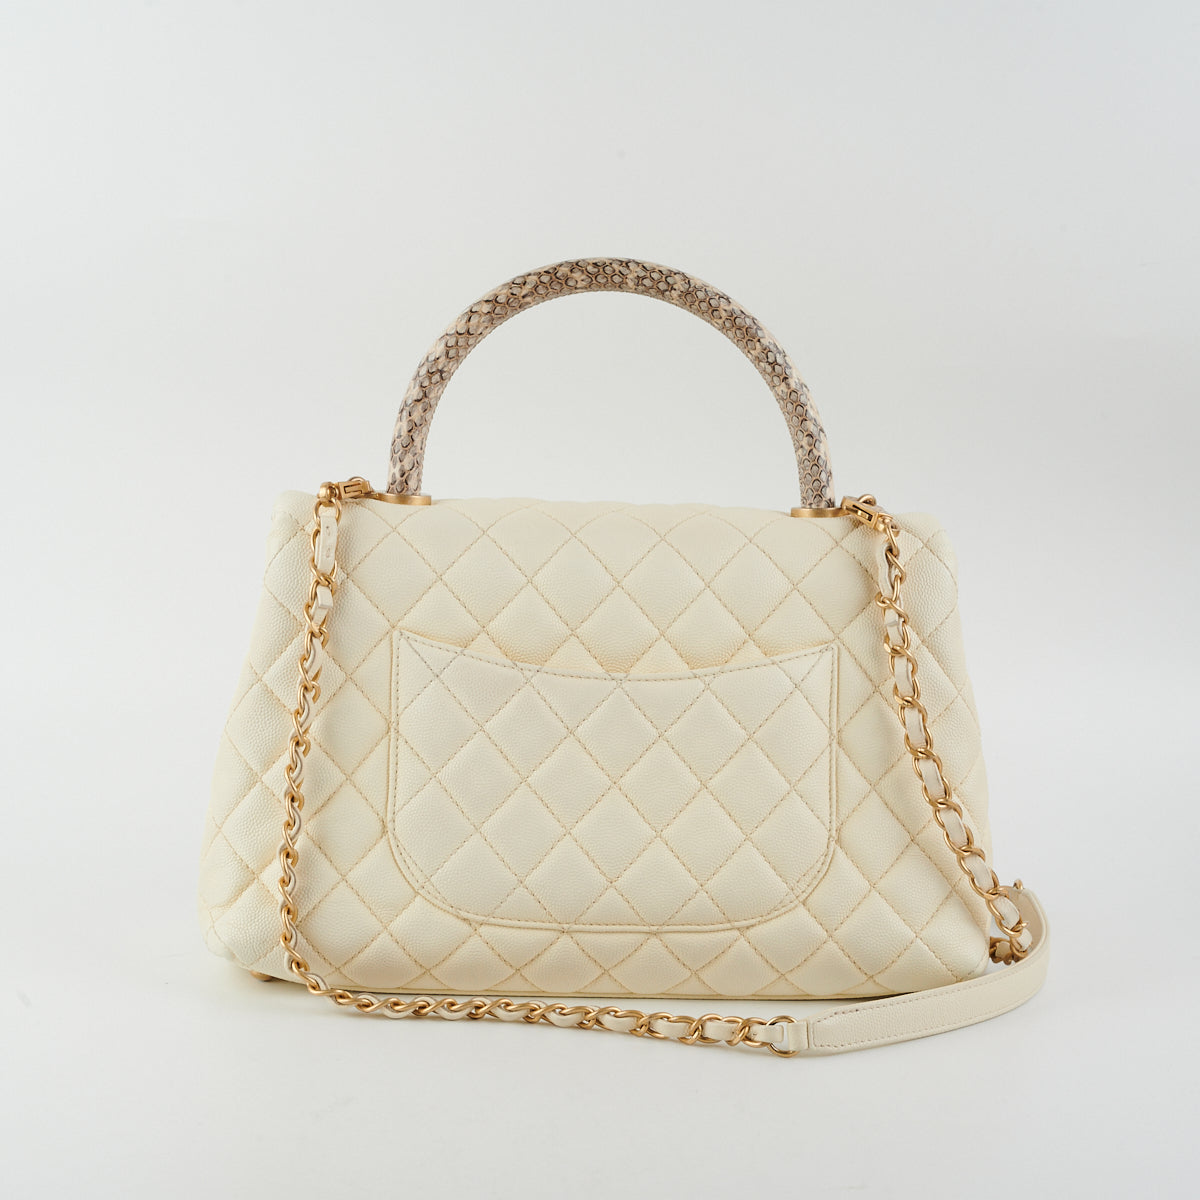 Chanel Coco Handle Bag With Elaphe Handle